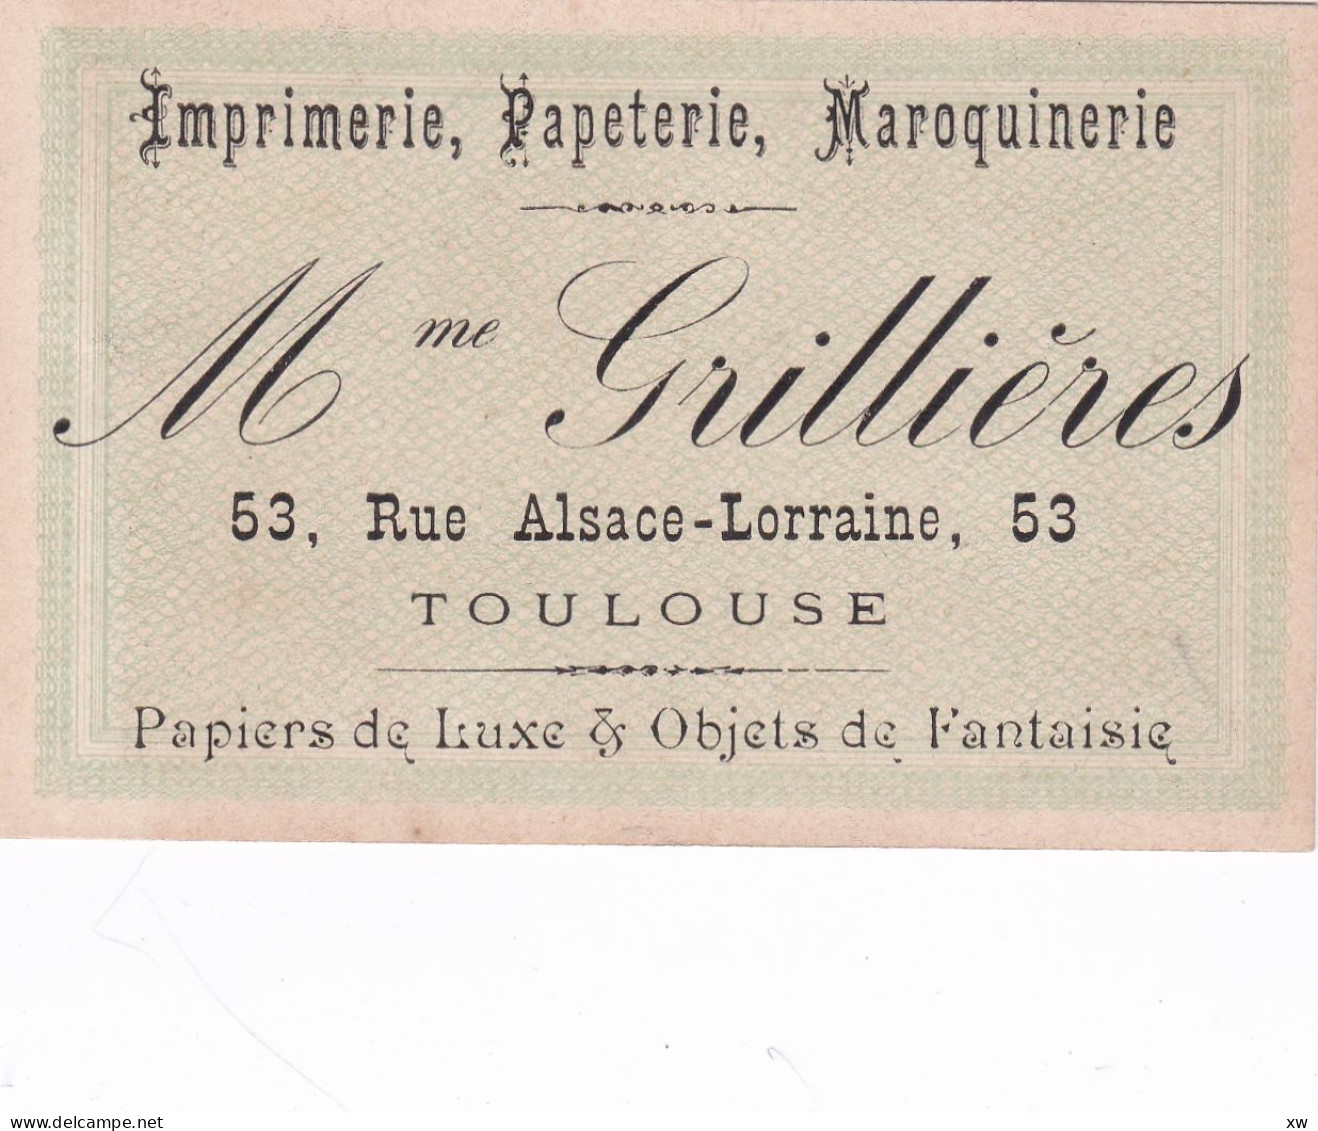 TOULOUSE -31- CARTE DE VISITE - Imprimerie, Papeterie; Maroquinerie - Mme GRILLIERES 53; Rue Alsace-Lorraine - 16-05-24 - Cartes De Visite